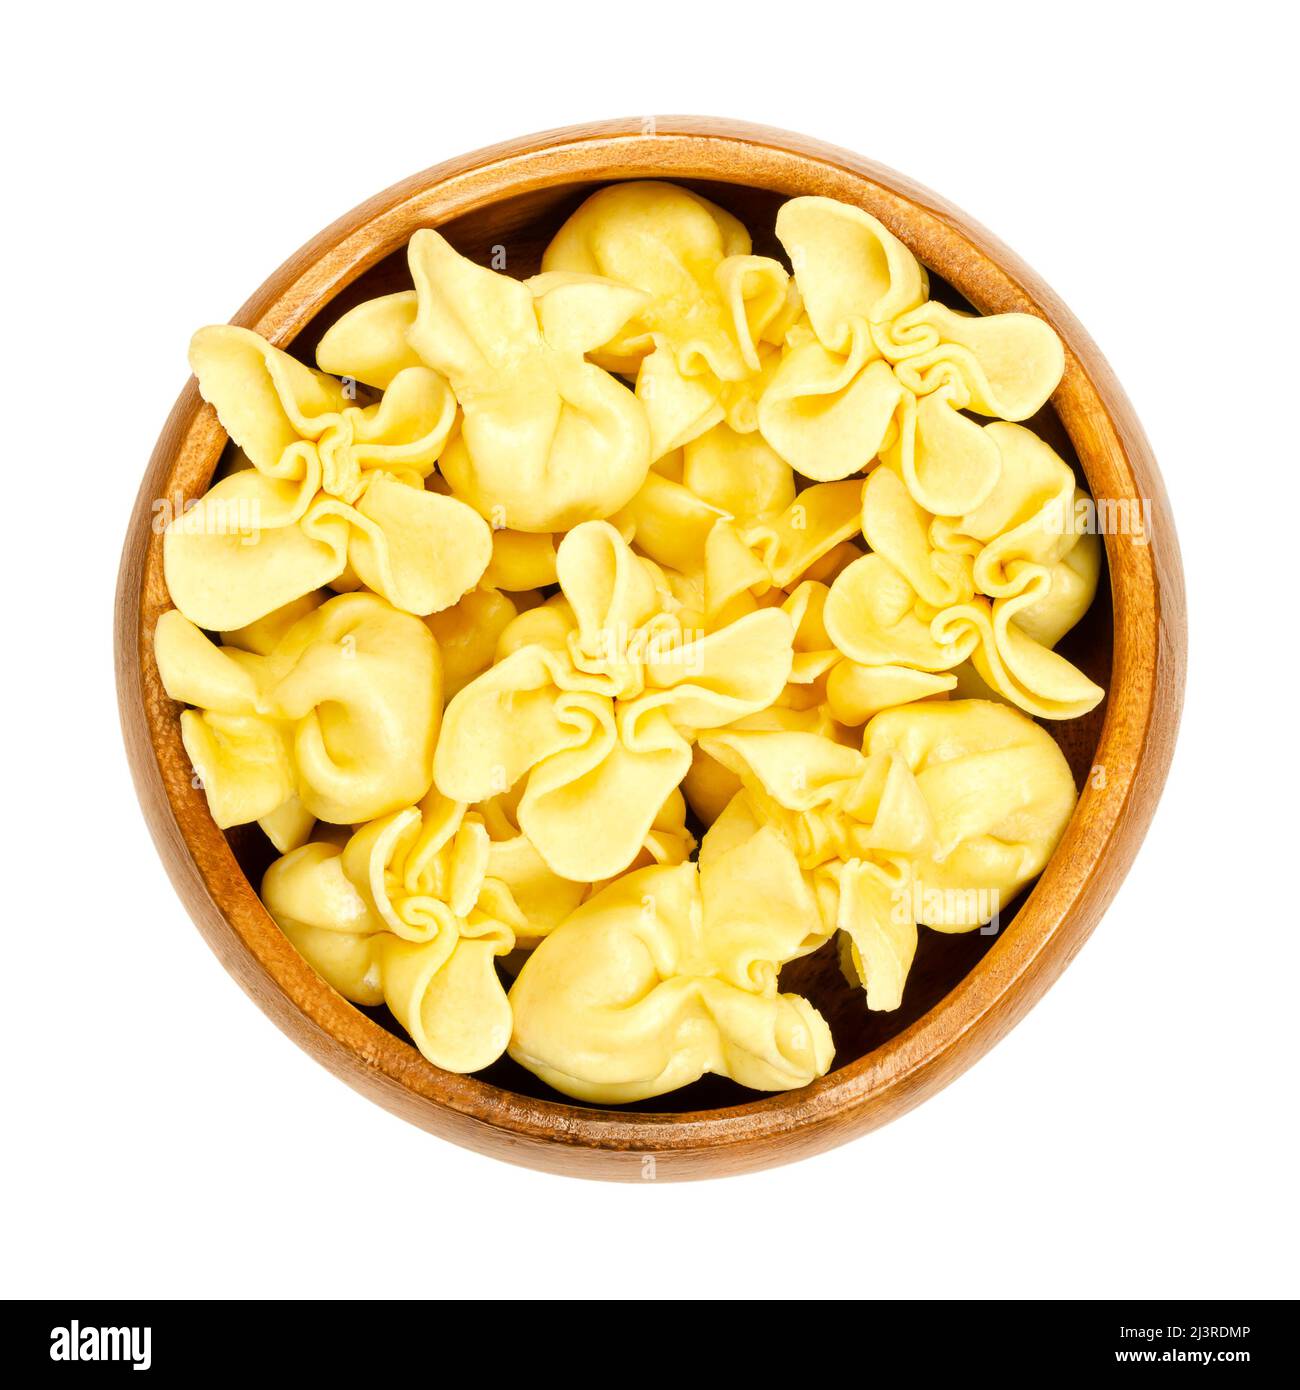 Fagottini, gefüllte italienische Pasta, Knödel in Holzschüssel. Quadratischer Nudelteig, mit Füllung in der Mitte und gefalteten Ecken in einer Spitze. Stockfoto